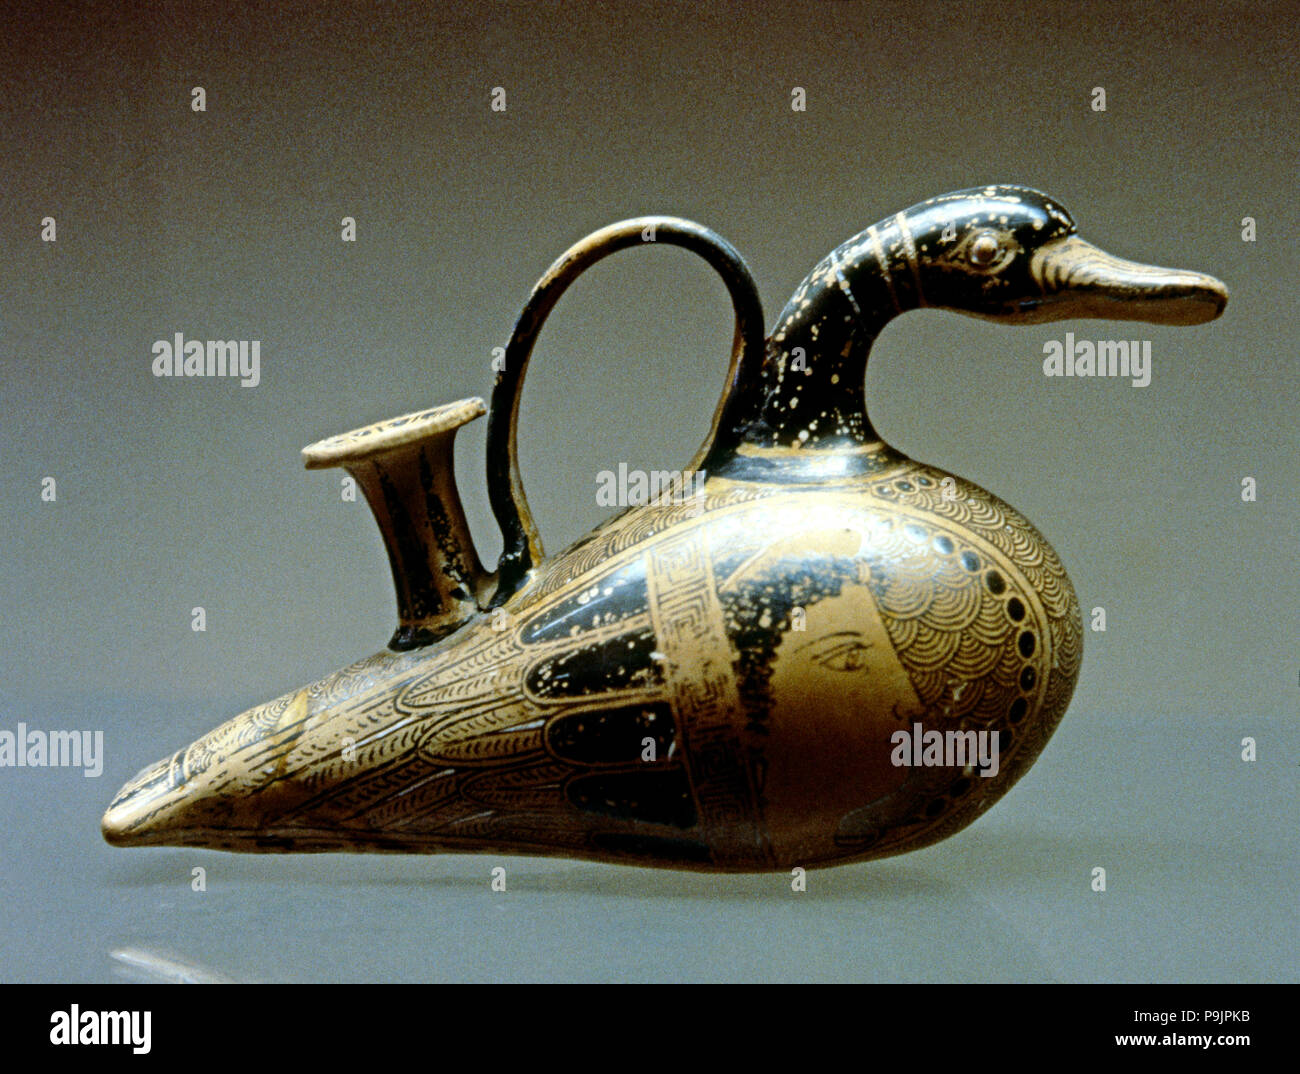 Biberon en céramique décoré comme un canard, faite en terre cuite. Banque D'Images